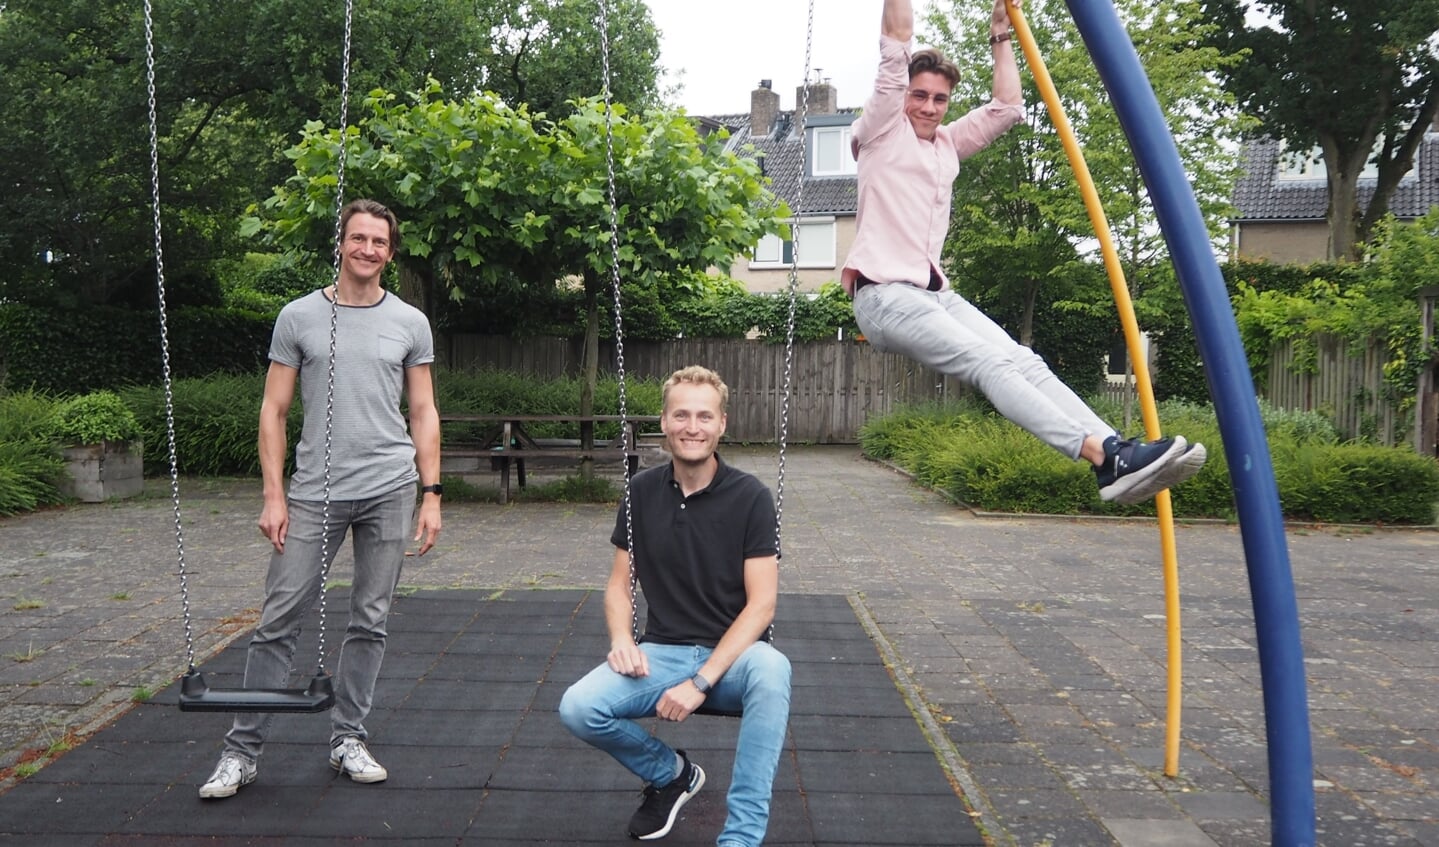 De initiatiefnemers voor het open sportpark in Leusden-Zuid met (v.l.n.r. Bas Renooij, Gert-Jan IJszenga en Wietse Holwerda.